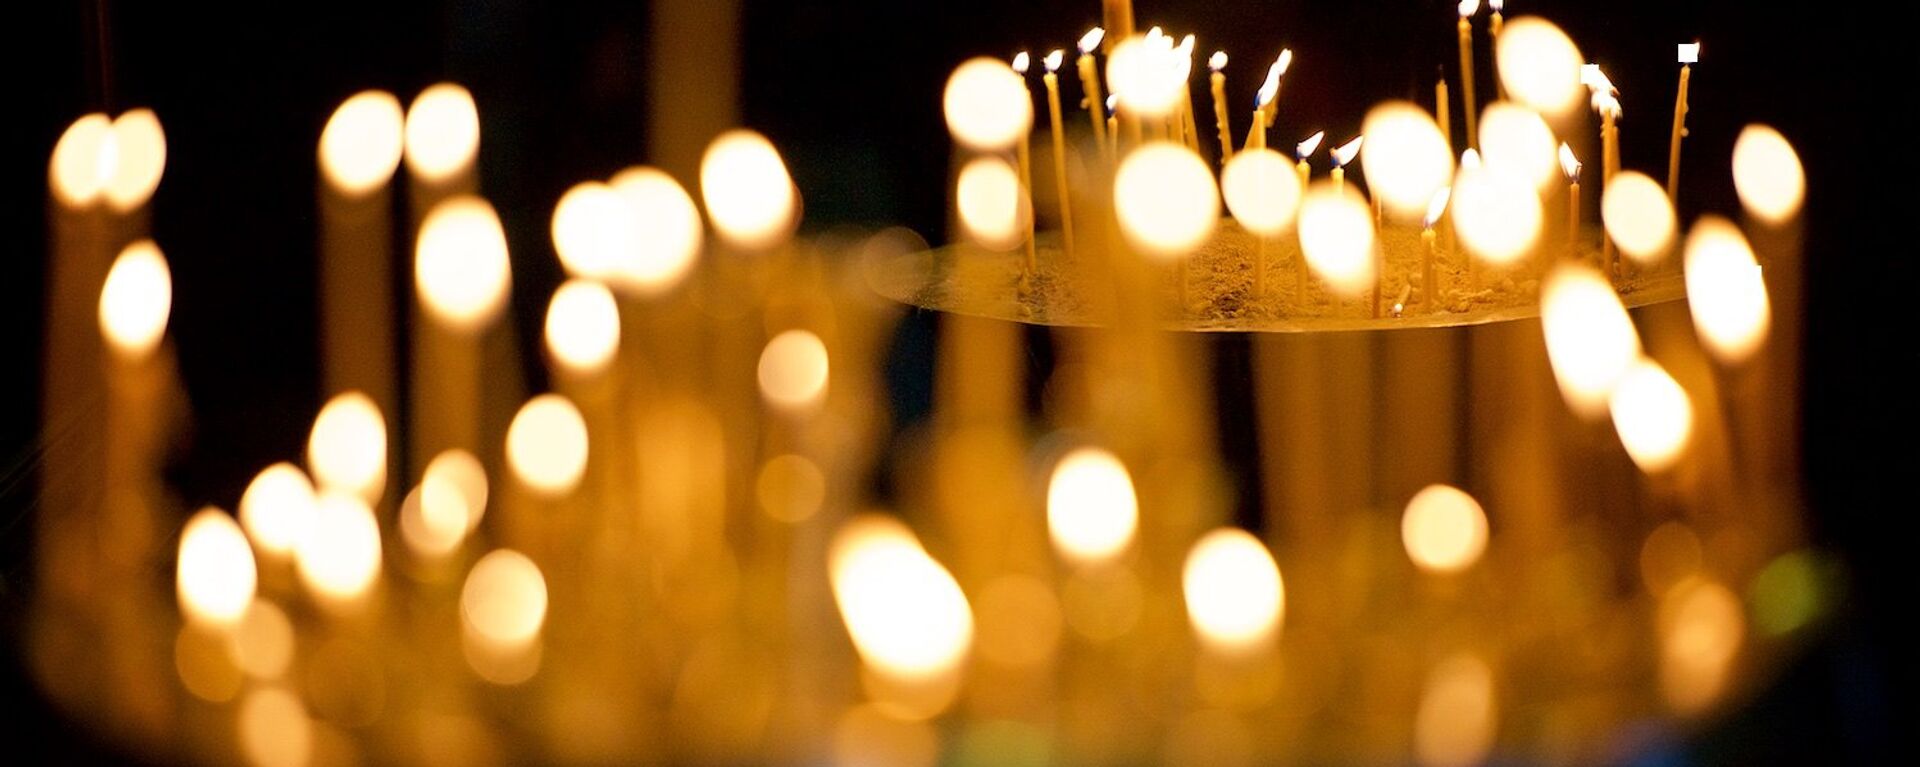  Горящие свечи у икон в кафедральном соборе Светицховели - Sputnik Грузия, 1920, 20.04.2021